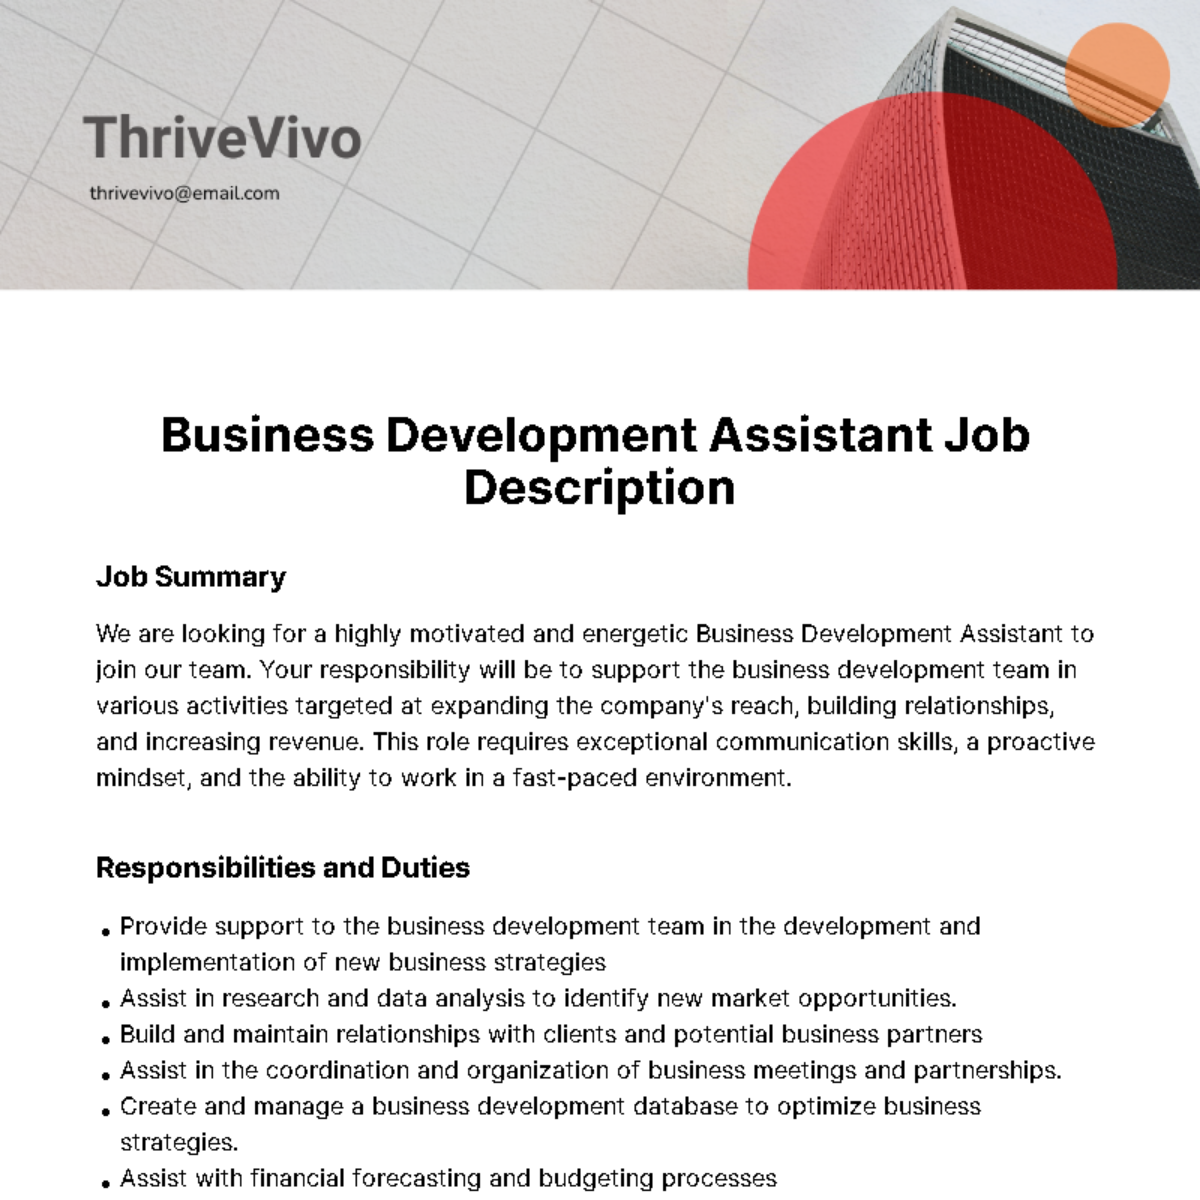 Business Development Assistant Job Description Template